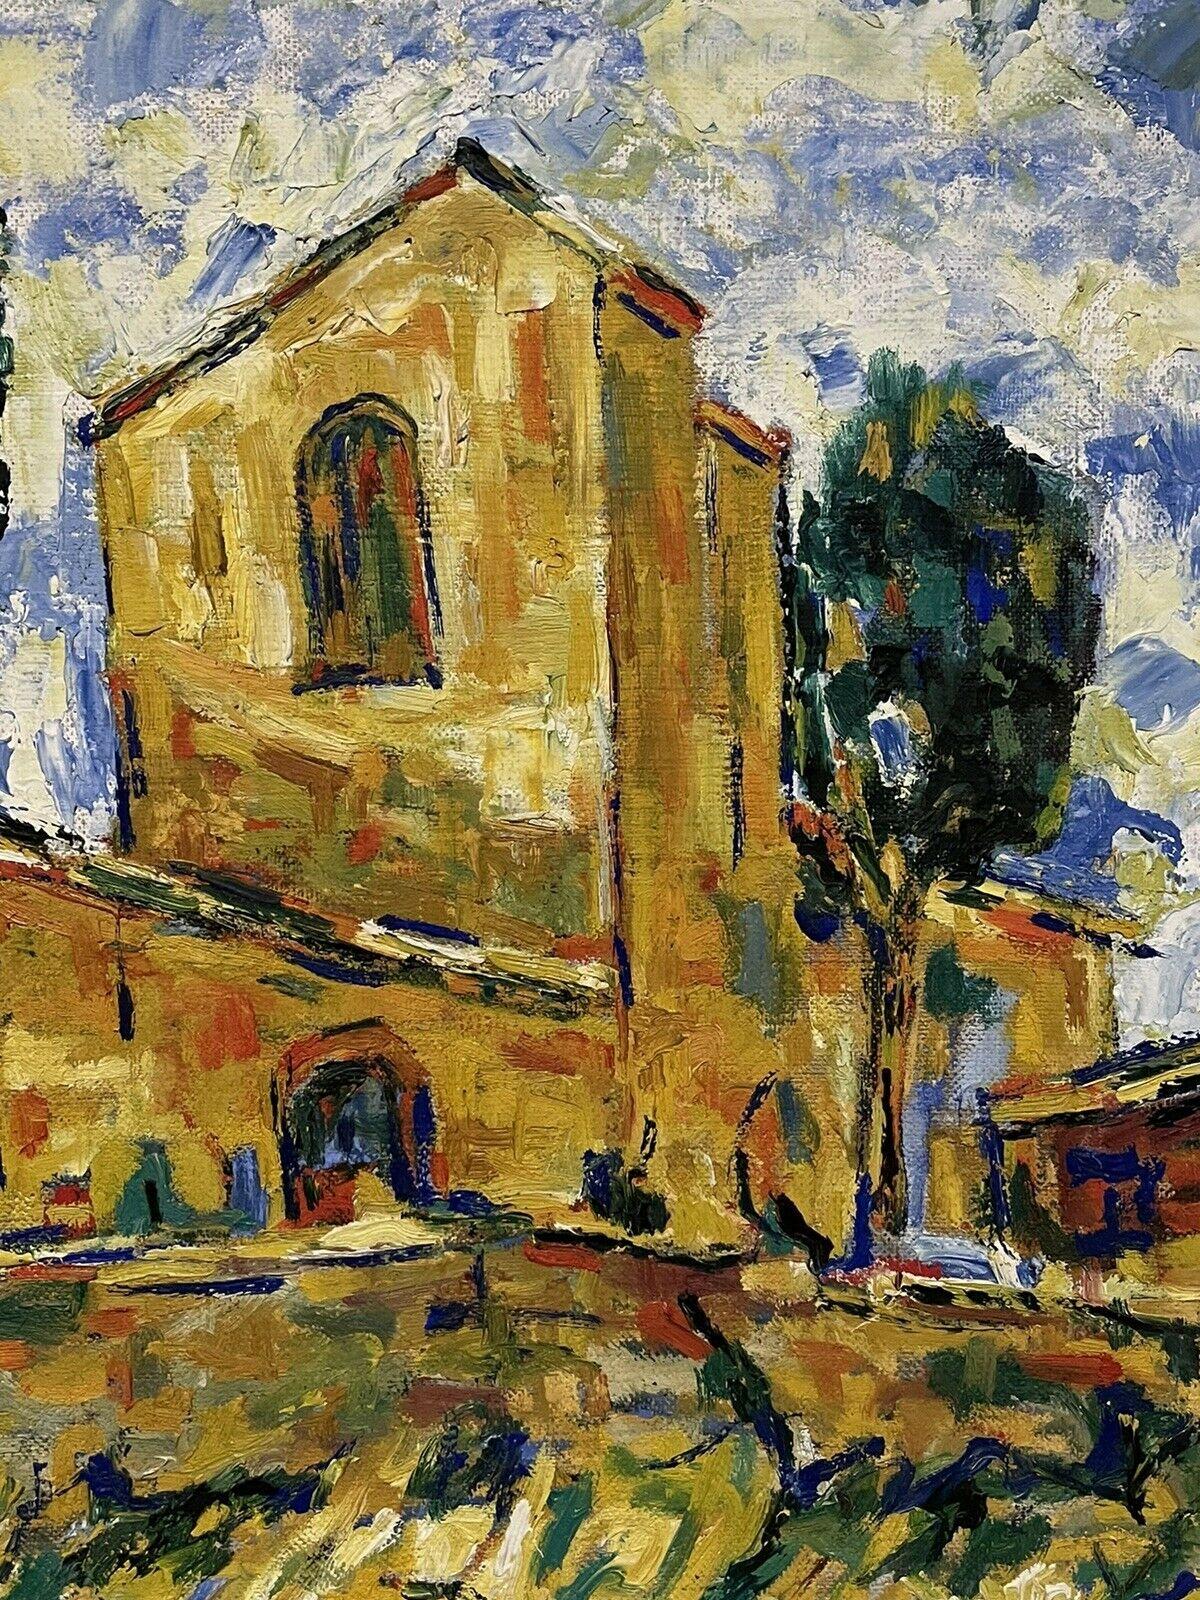 Peinture à l'huile post-impressionniste française du 20ème siècle, signée, Provencal House - Gris Landscape Painting par Post-Impressionist